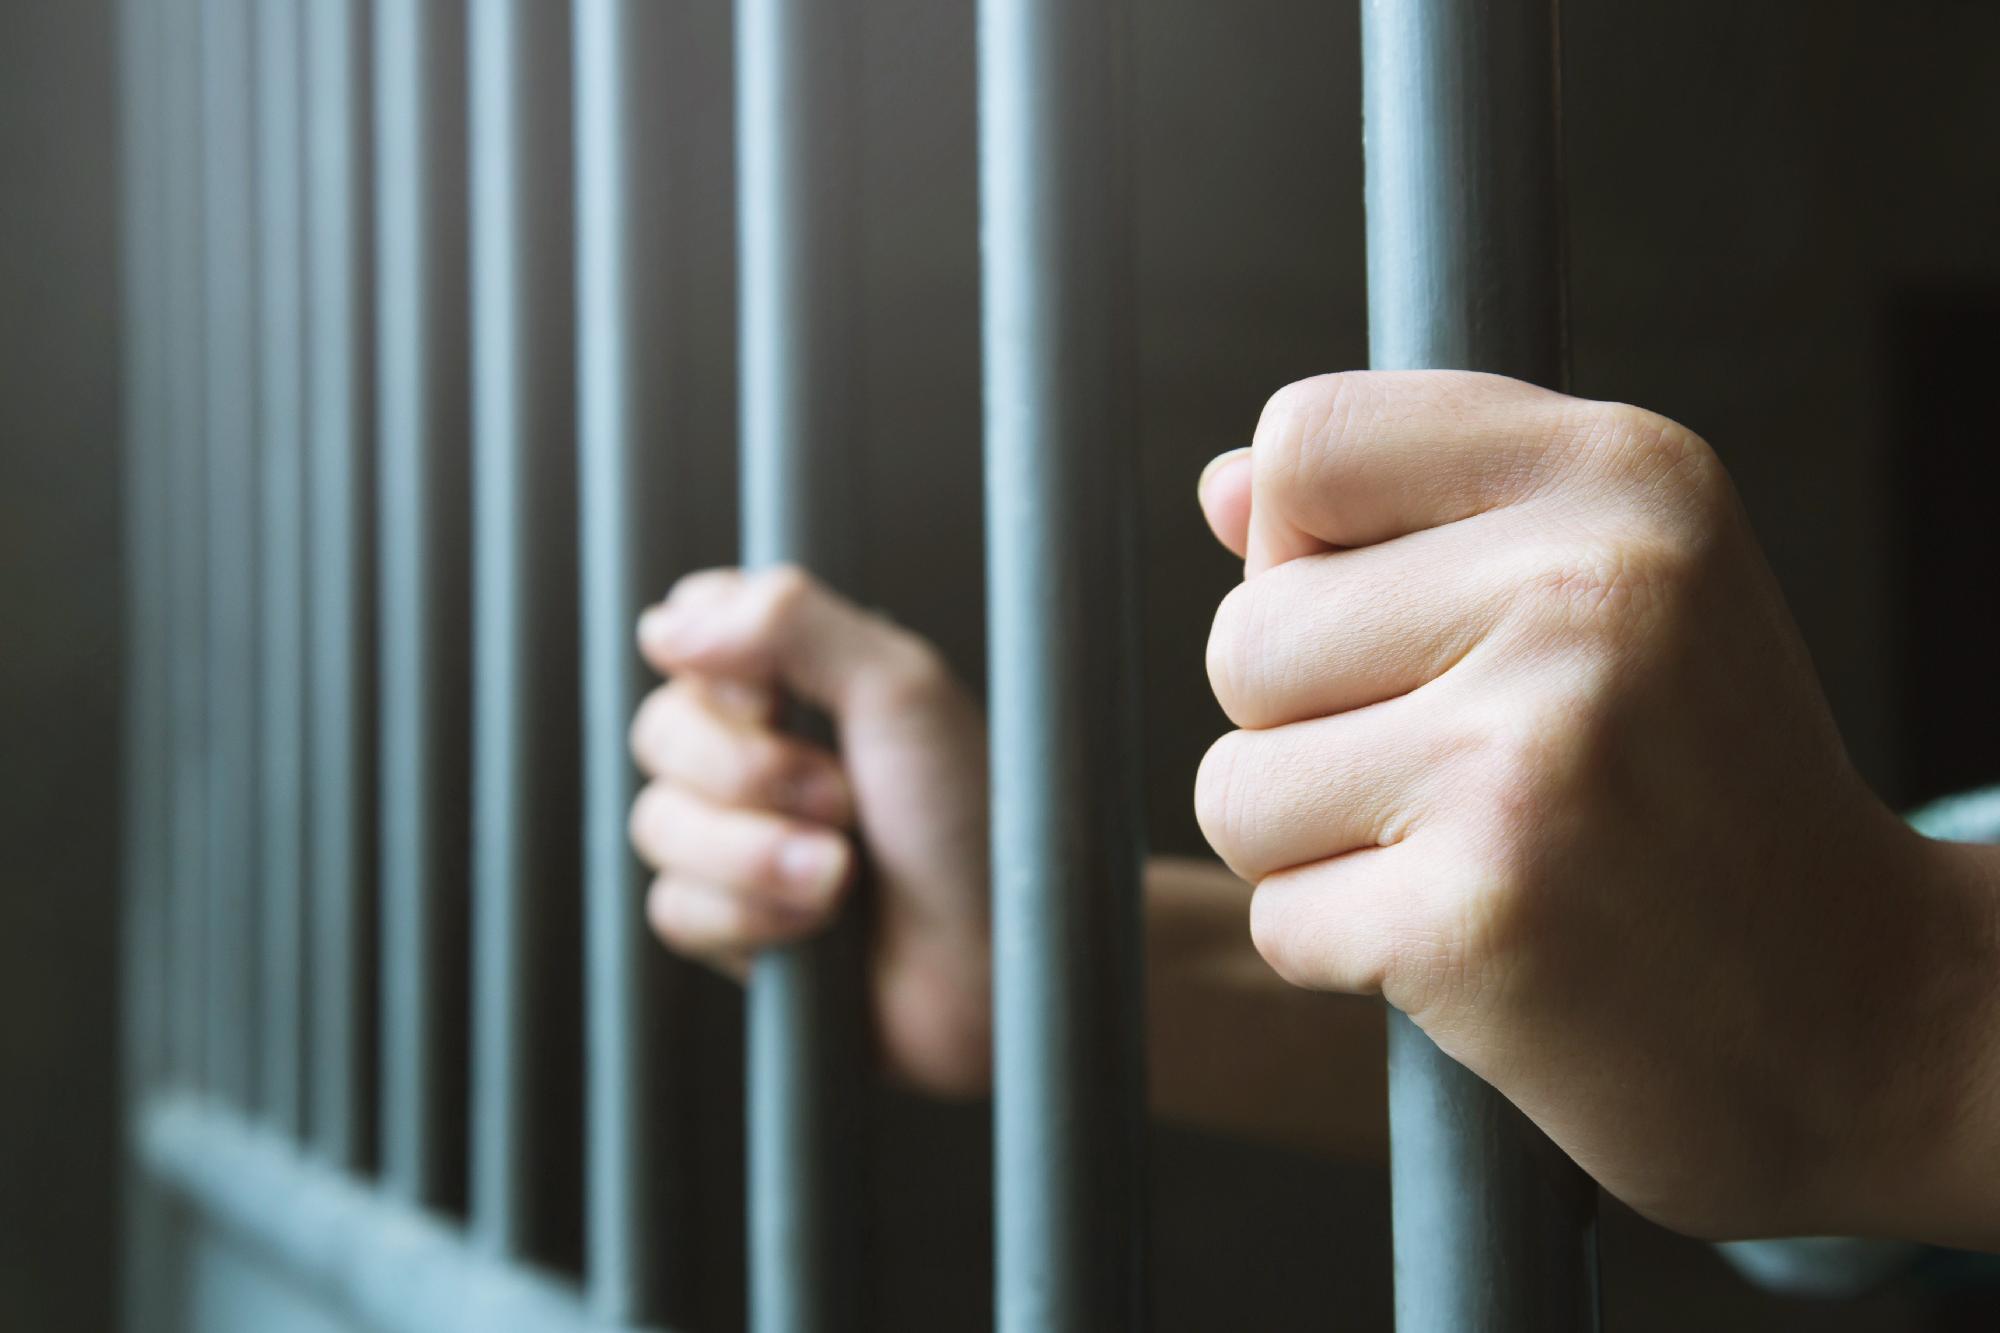 Letöltendő börtönt kért az ügyészség a kiskorúakkal viszonyt folytató edző ellen